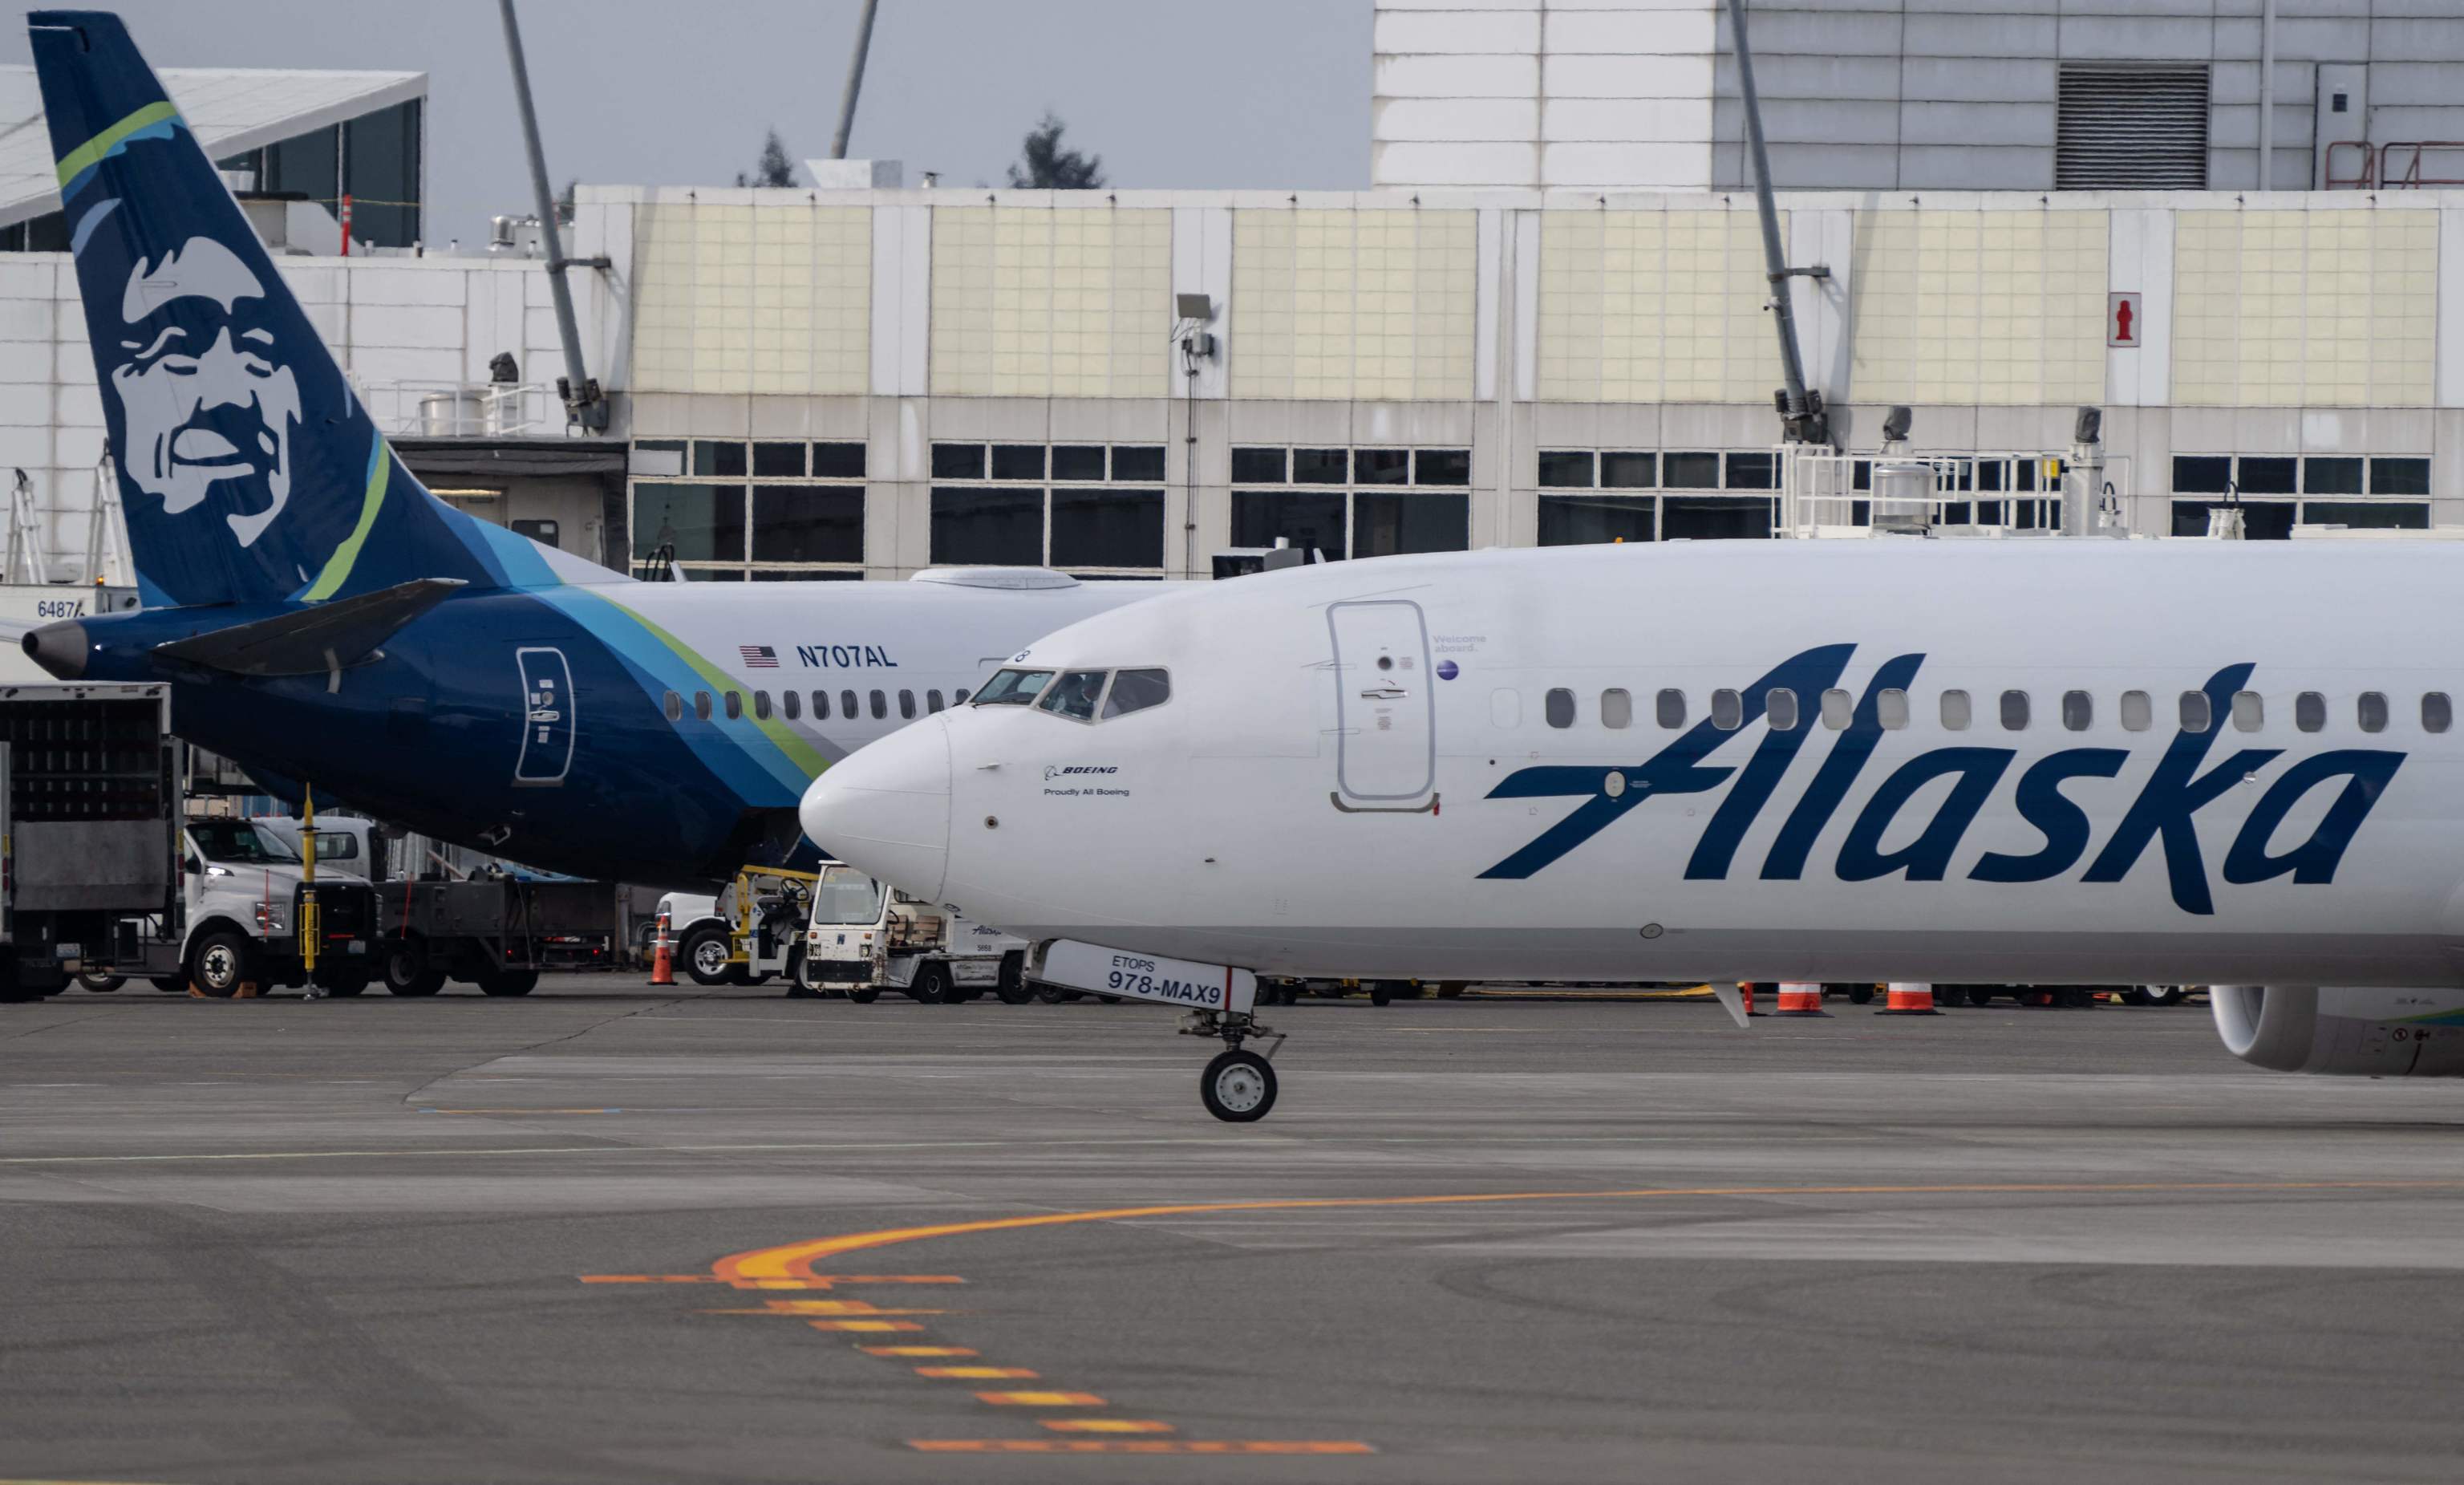 ¿Y ahora qué? La crisis del 737 MAX deja sin líderes a Boeing, que ha perdido un 26% de su valor en bolsa este año